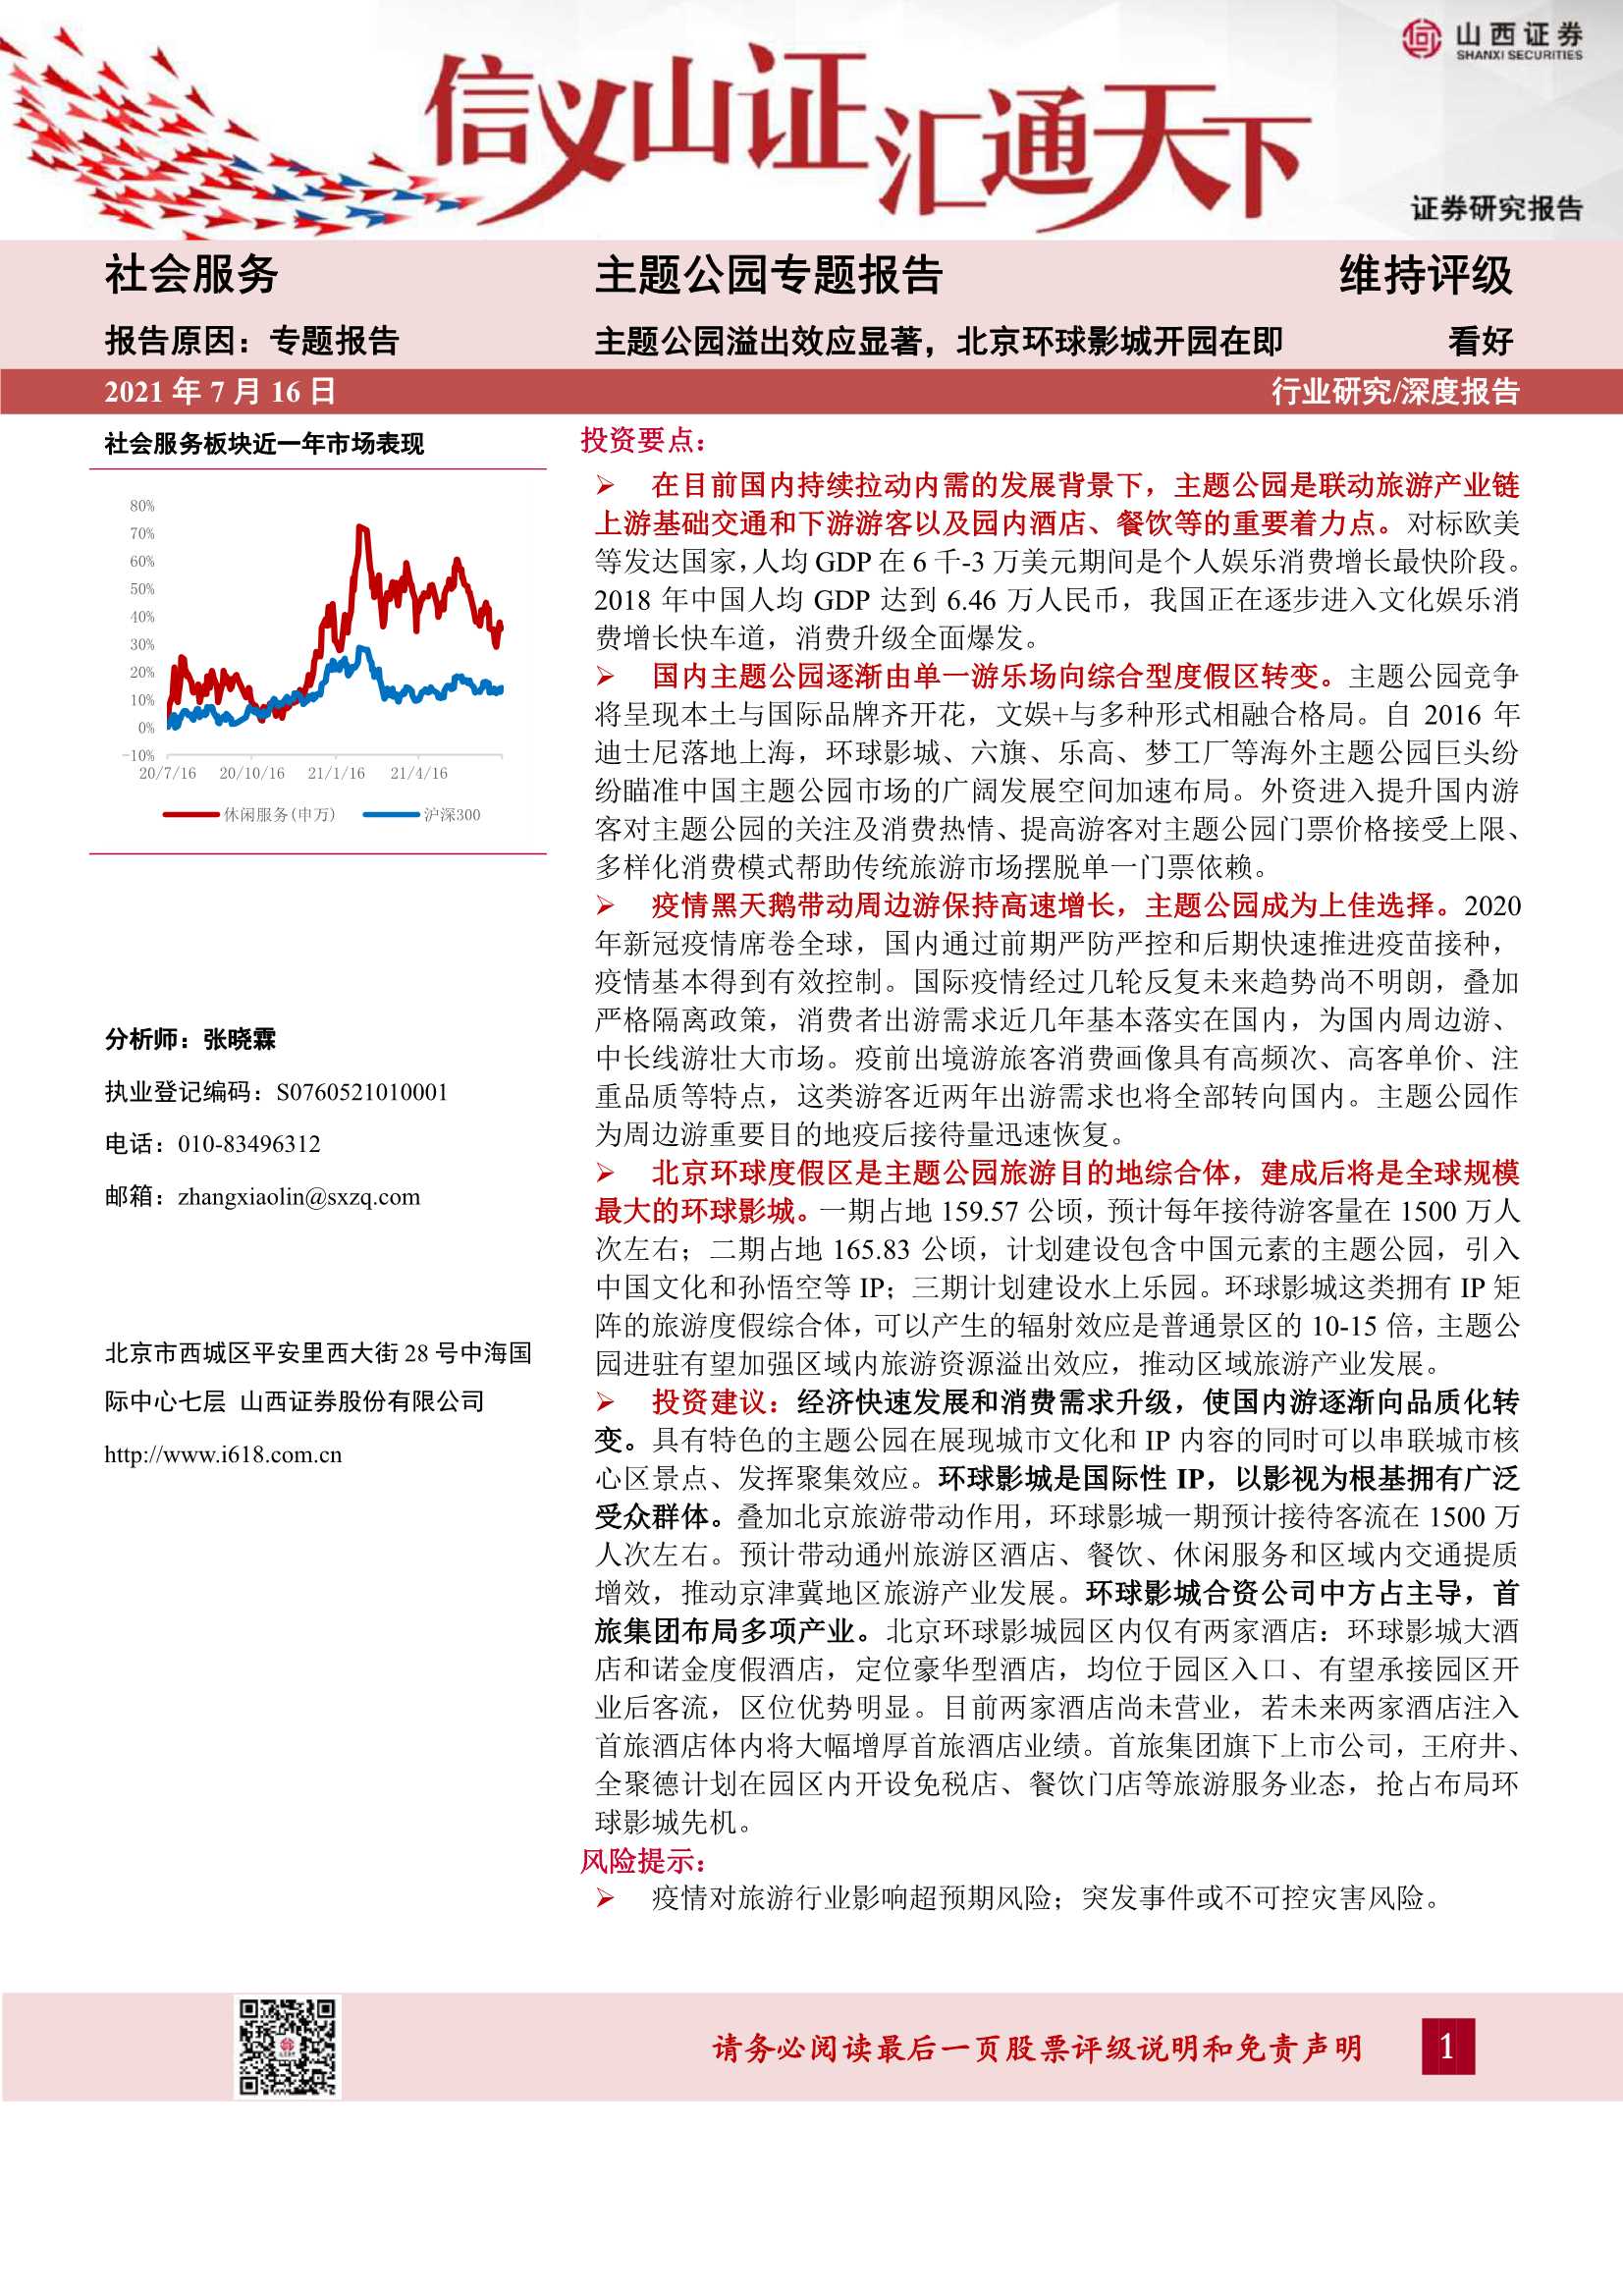 山西证券-社会服务行业主题公园专题报告：主题公园溢出效应显著，北京环球影城开园在即-20210716-33页